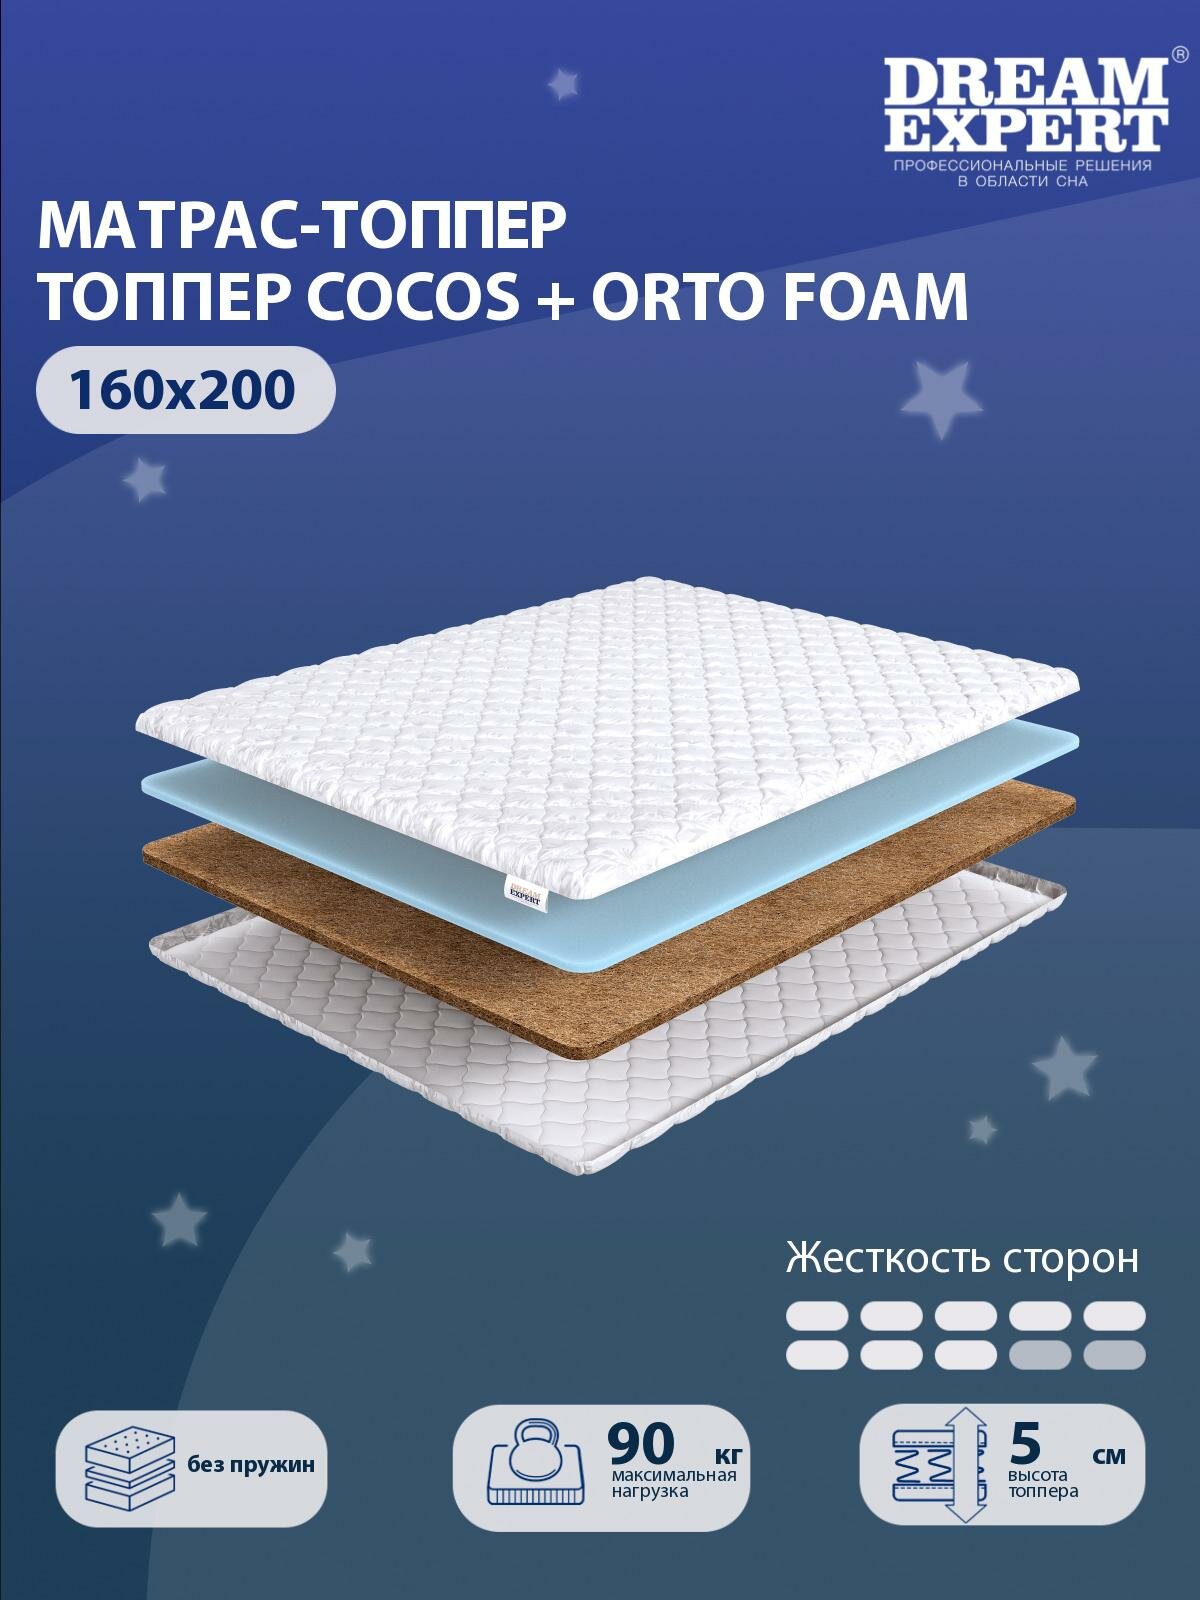 Матрас-топпер, Топпер-наматрасник DreamExpert Cocos + Orto Foam тонкий матрас, на резинке, Беспружинный, хлопковый, на кровать 160x200